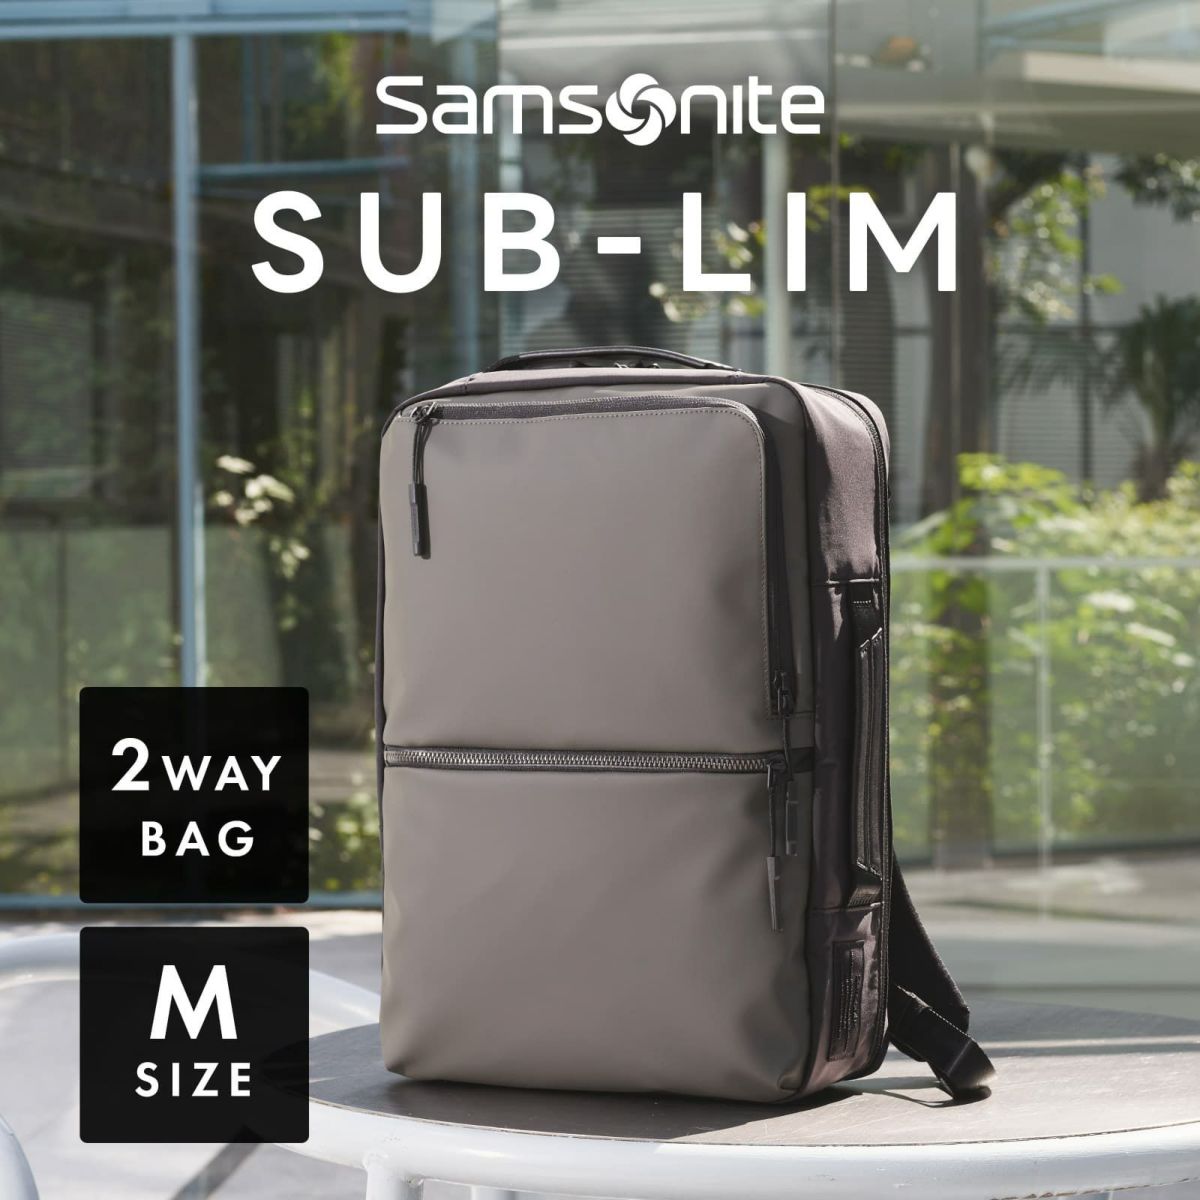 サムソナイト Samsonite ビジネスバッグ 2way SUB-LIM 2WAY BAG M 